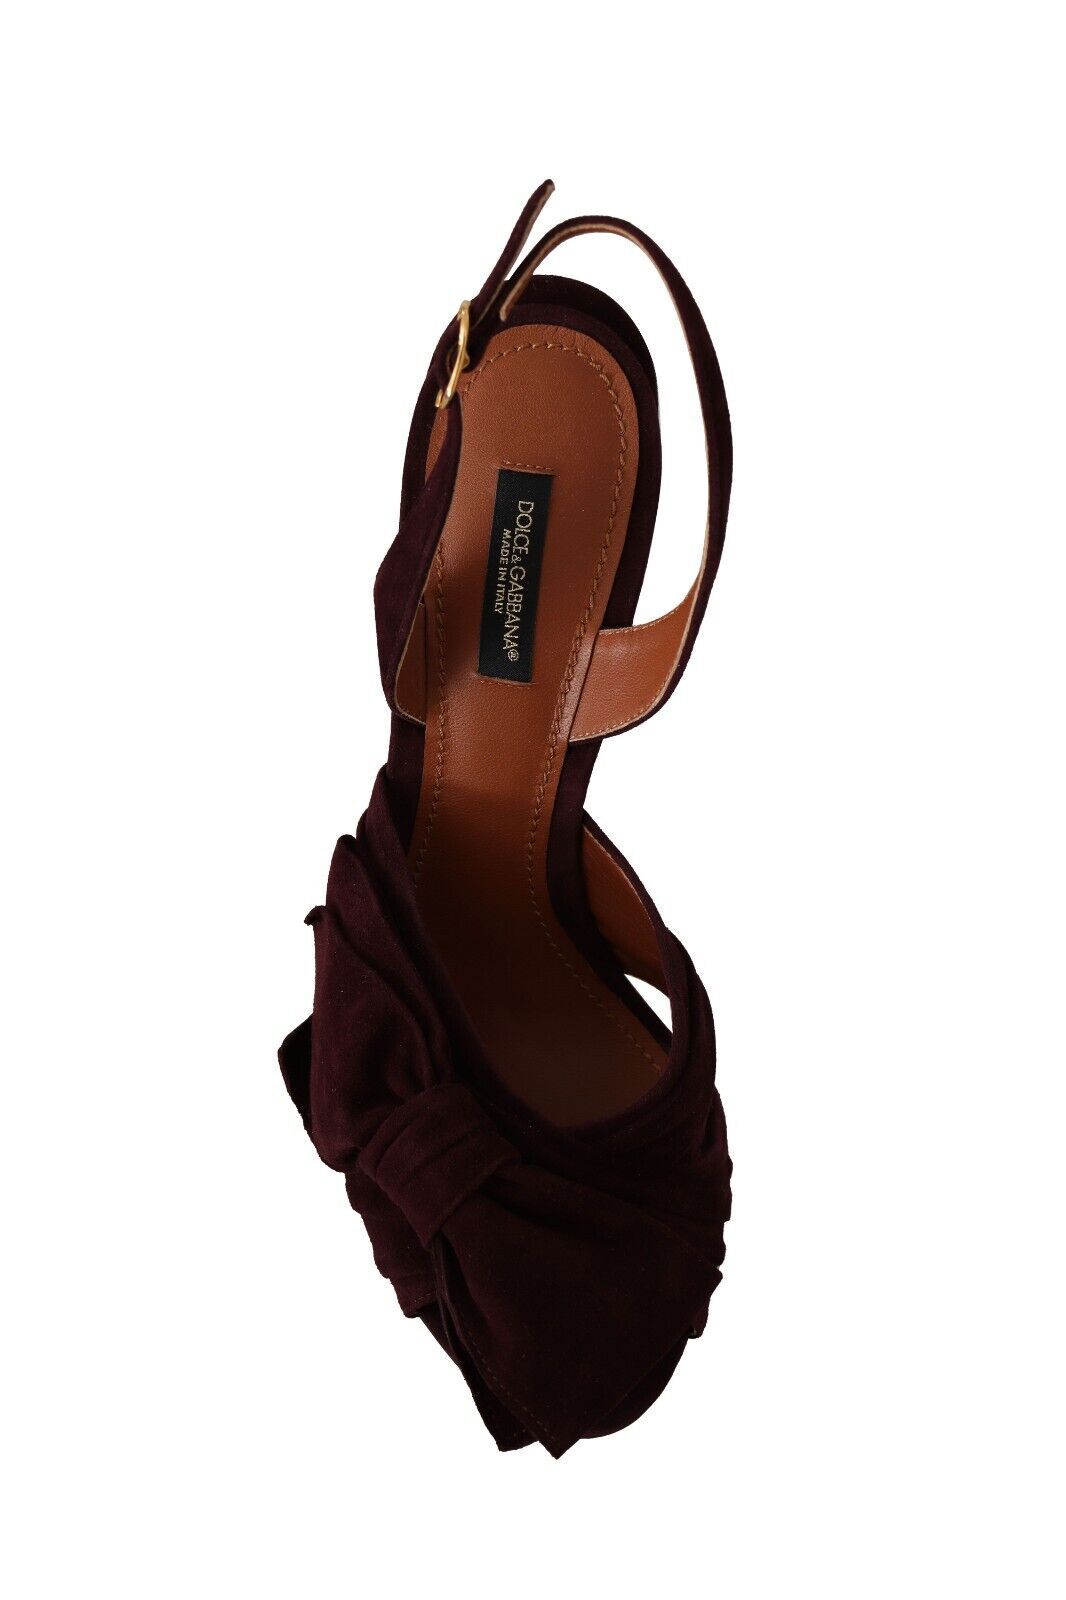 Elegant Purple Suede Heels Sandals